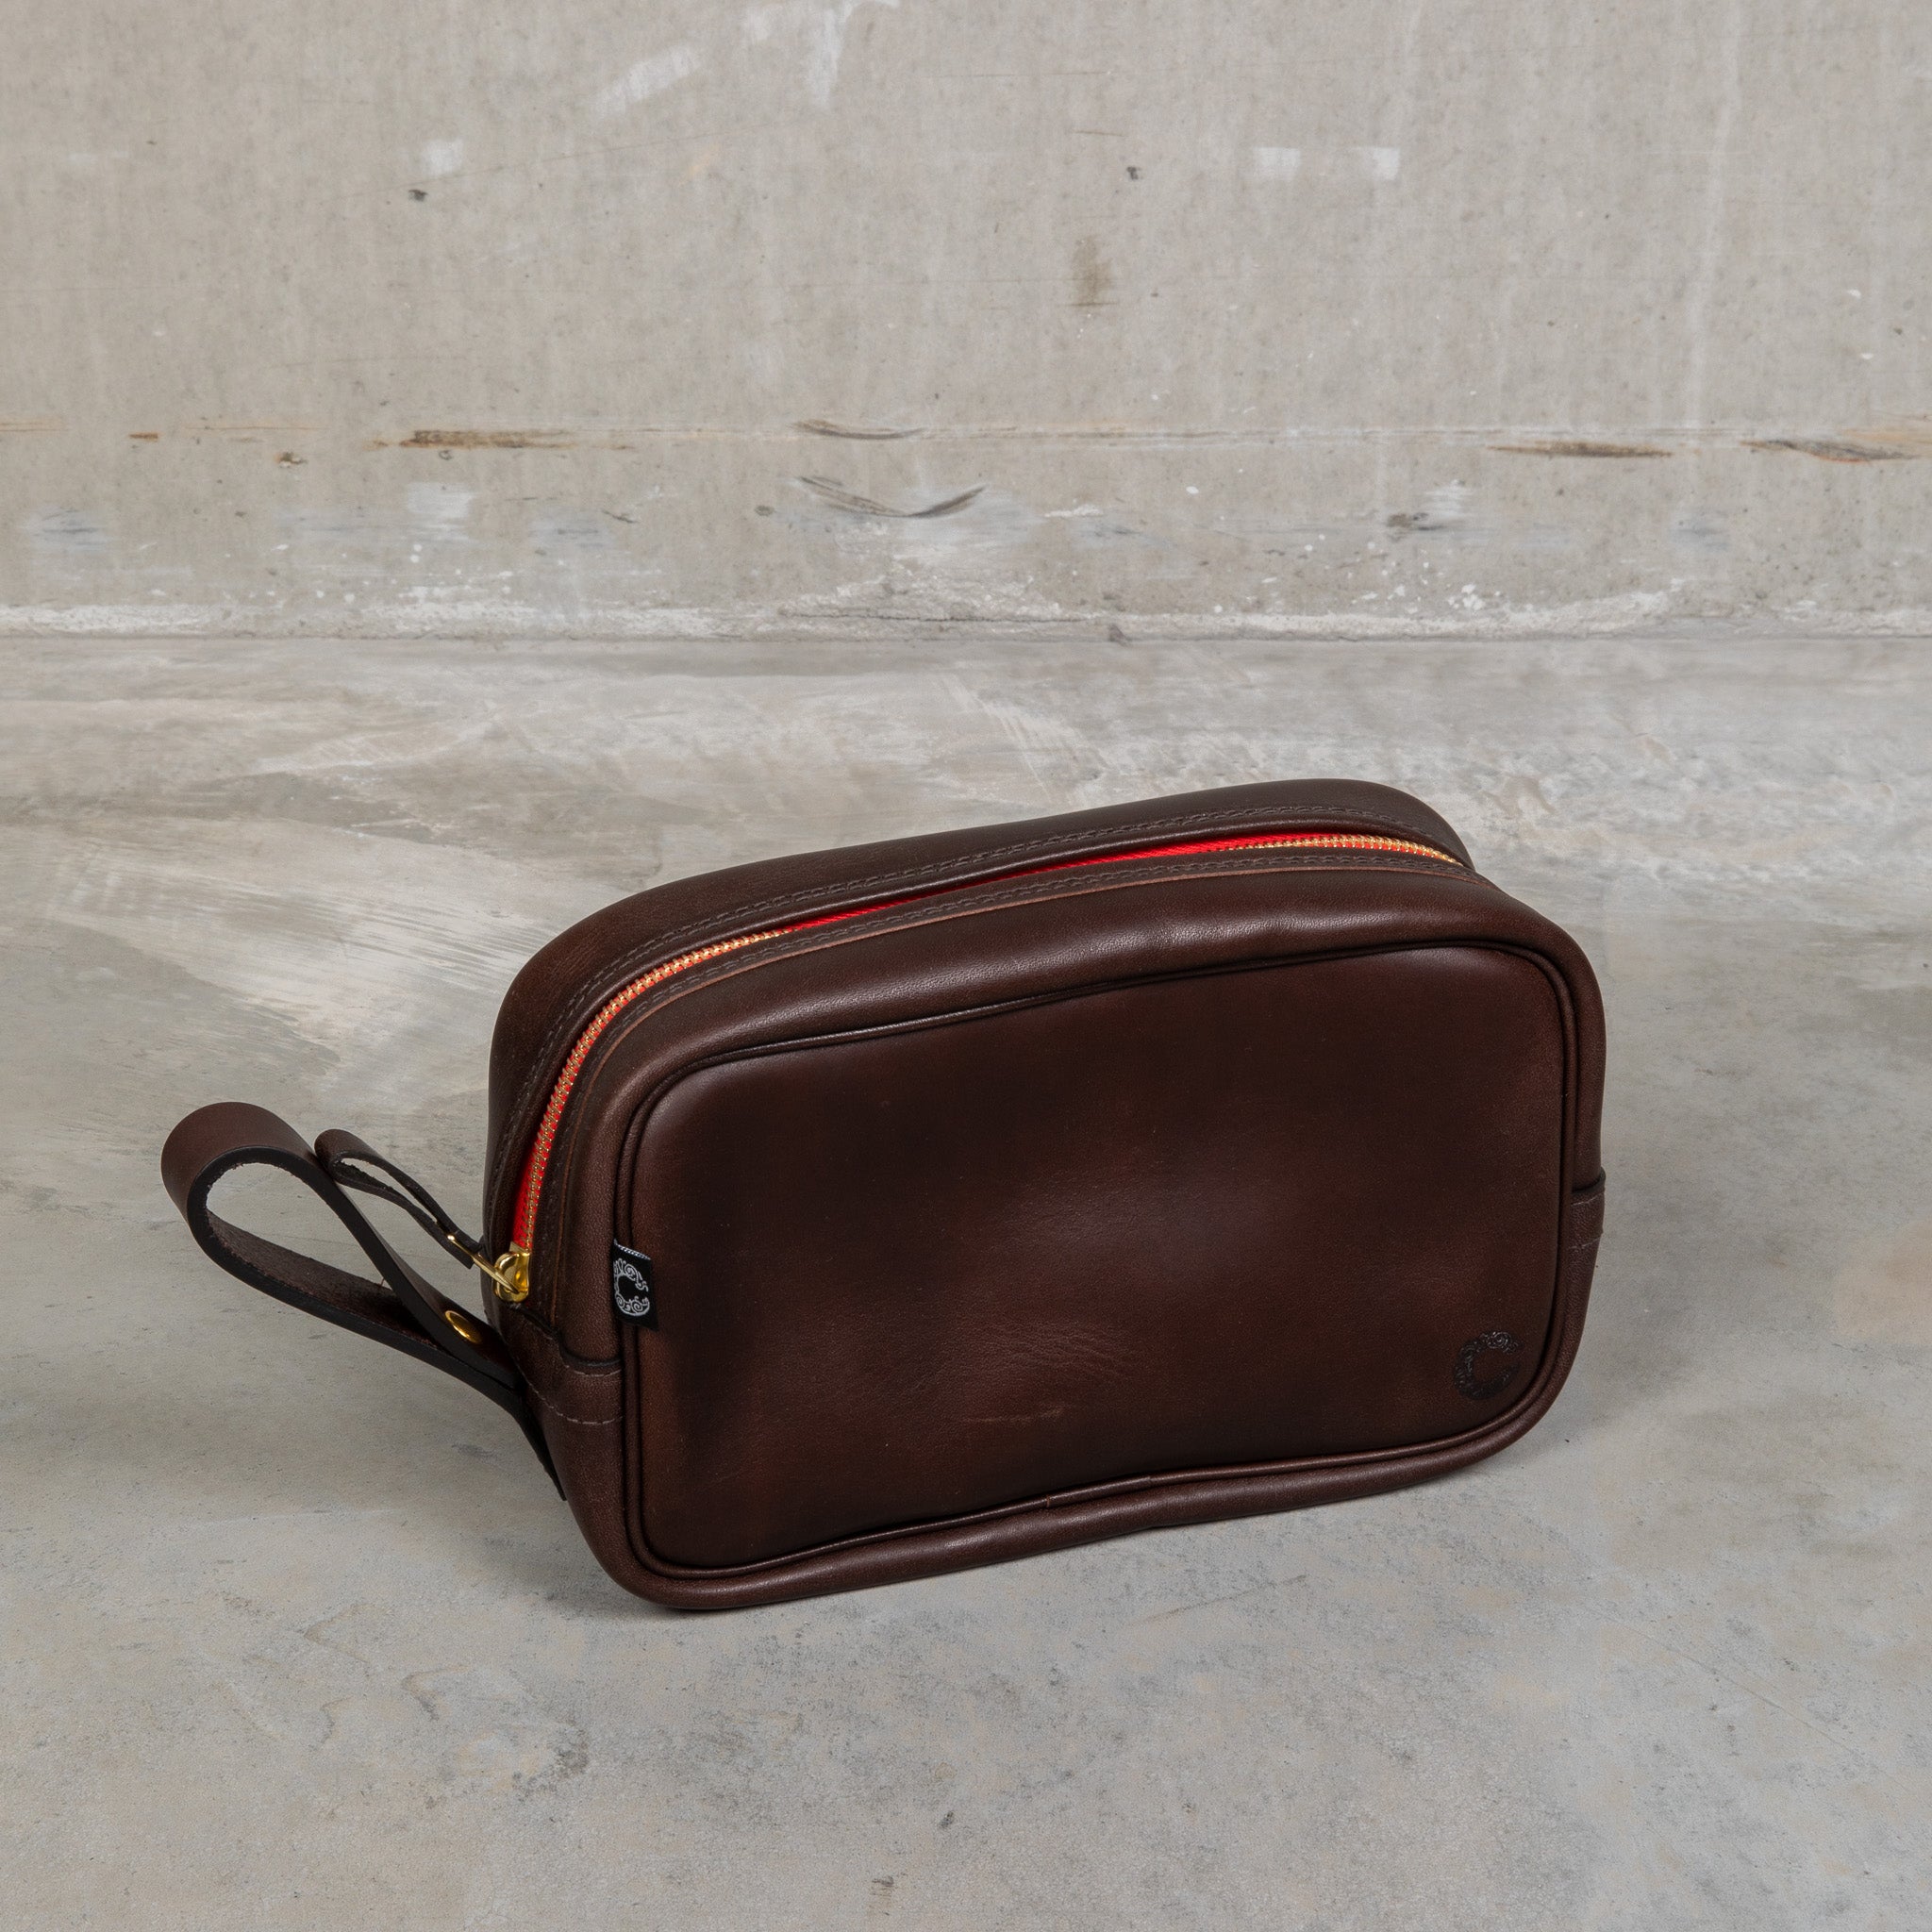 Croots Vintage Leather Wash Bag Dark Brown